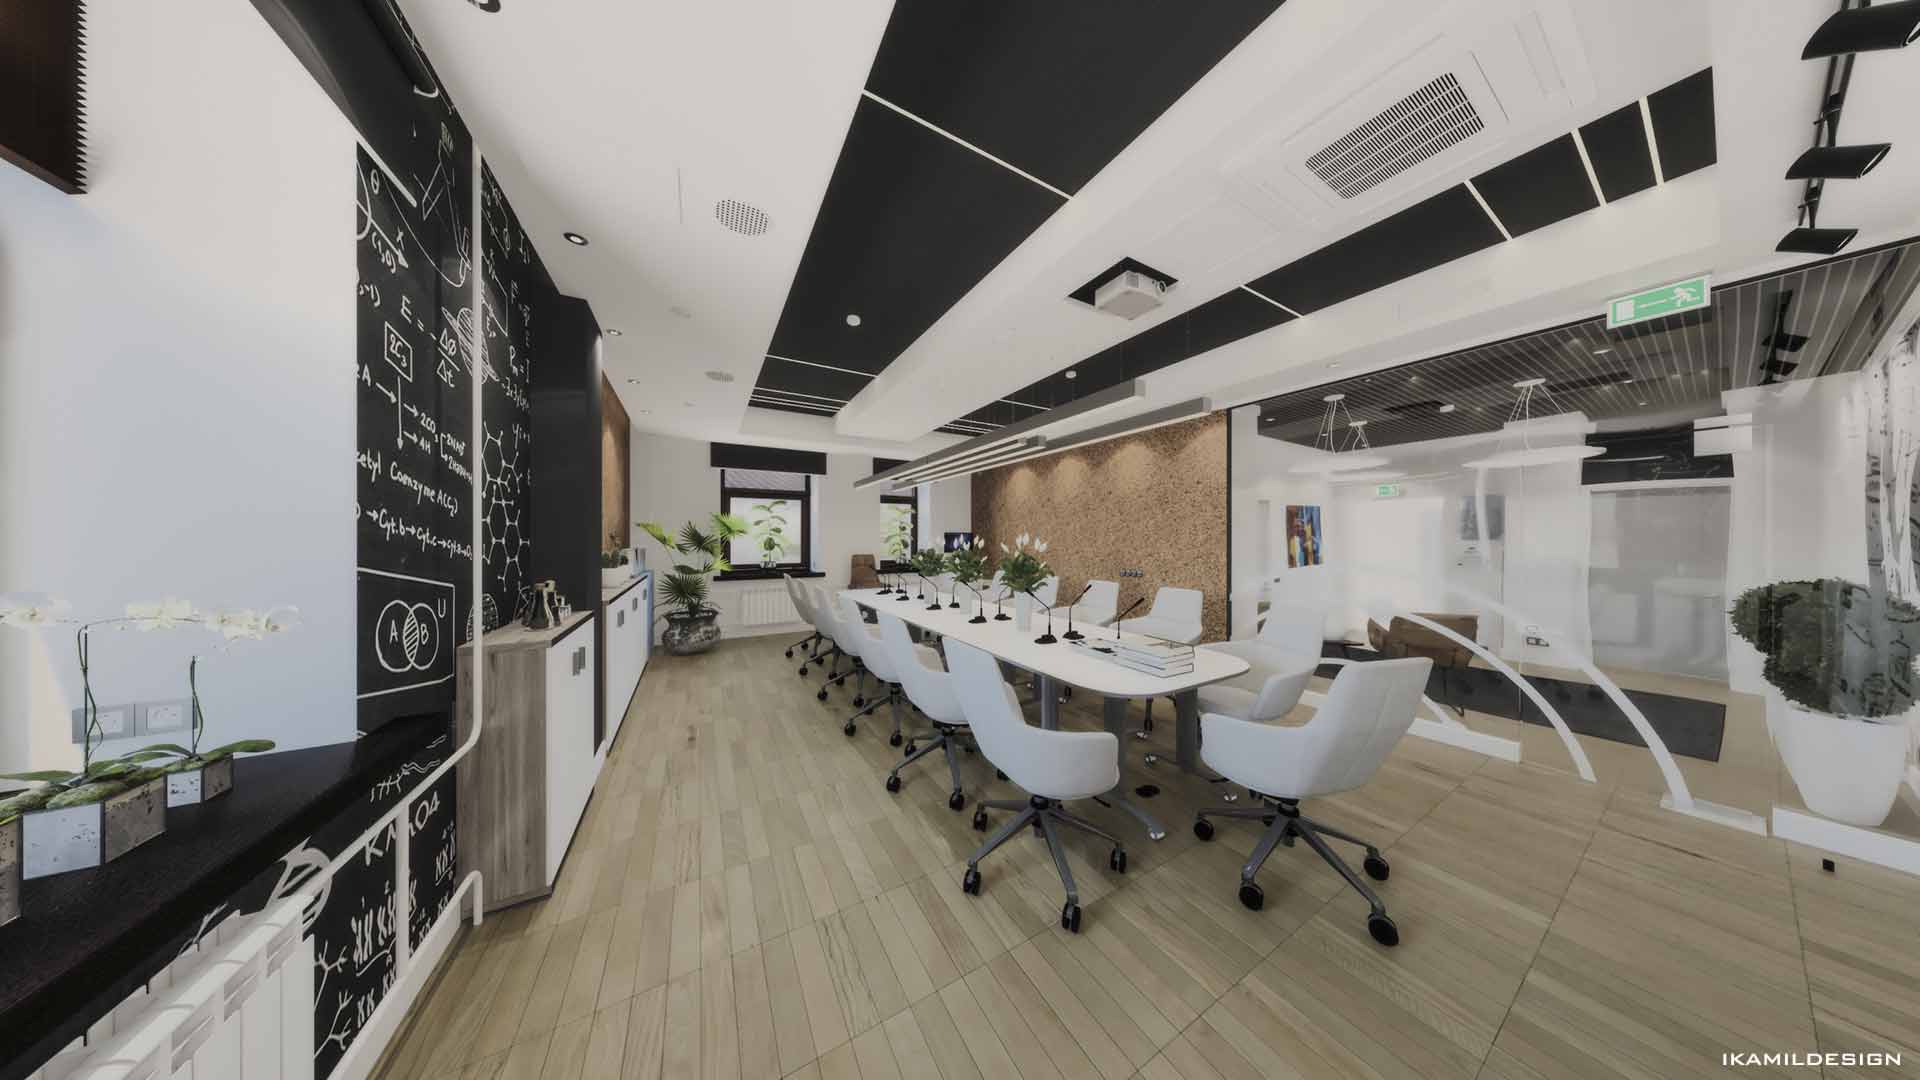 дизайн интерьера переговорной офиса, нко, москва, ikamildesign